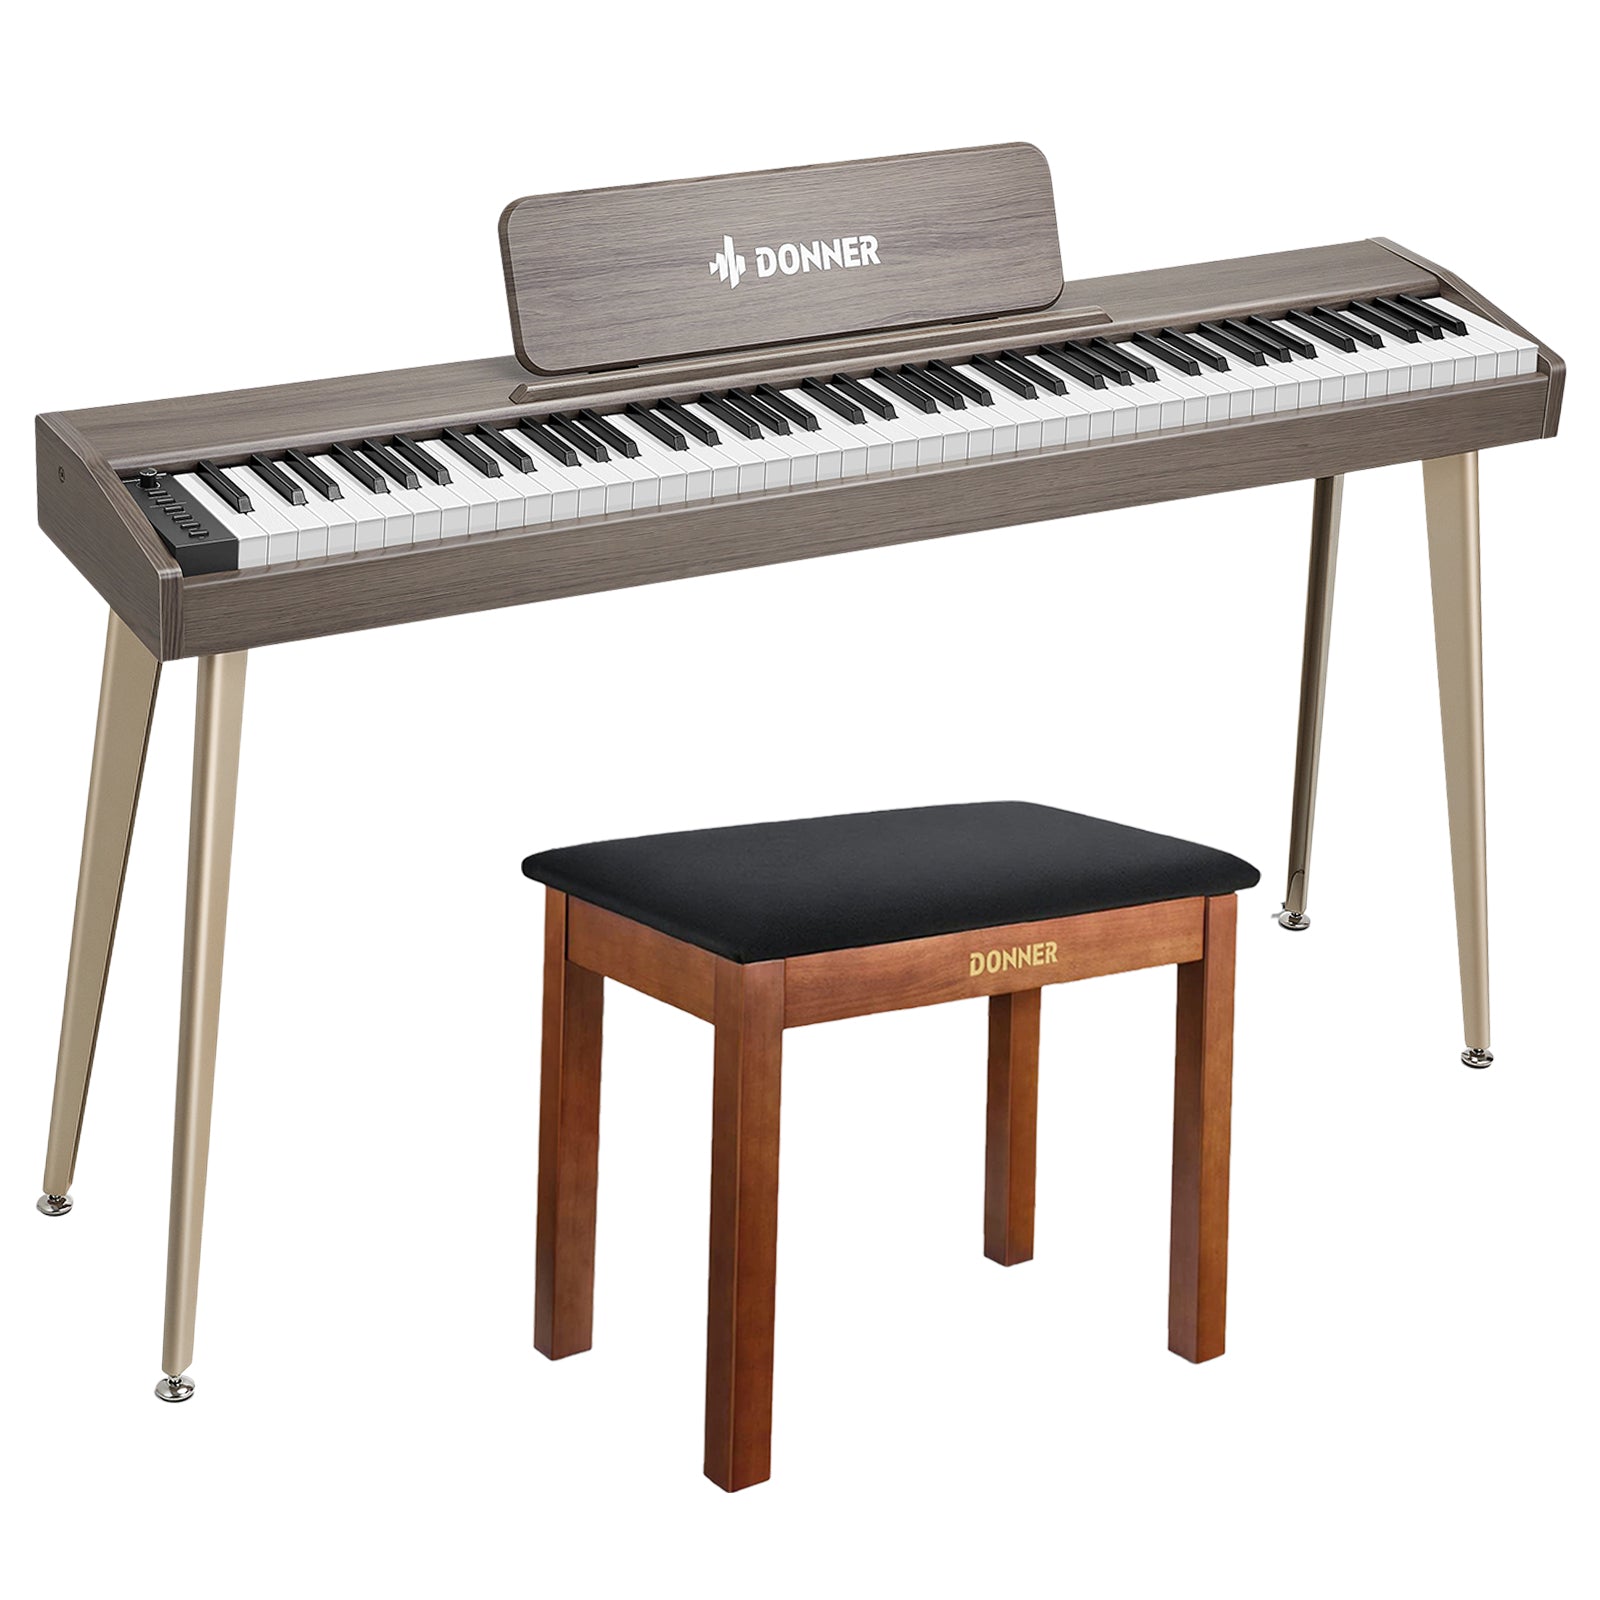 Donner DDP-60 Digitalpiano - Grau-Braun / Piano + Klavierbank Braun von Donner